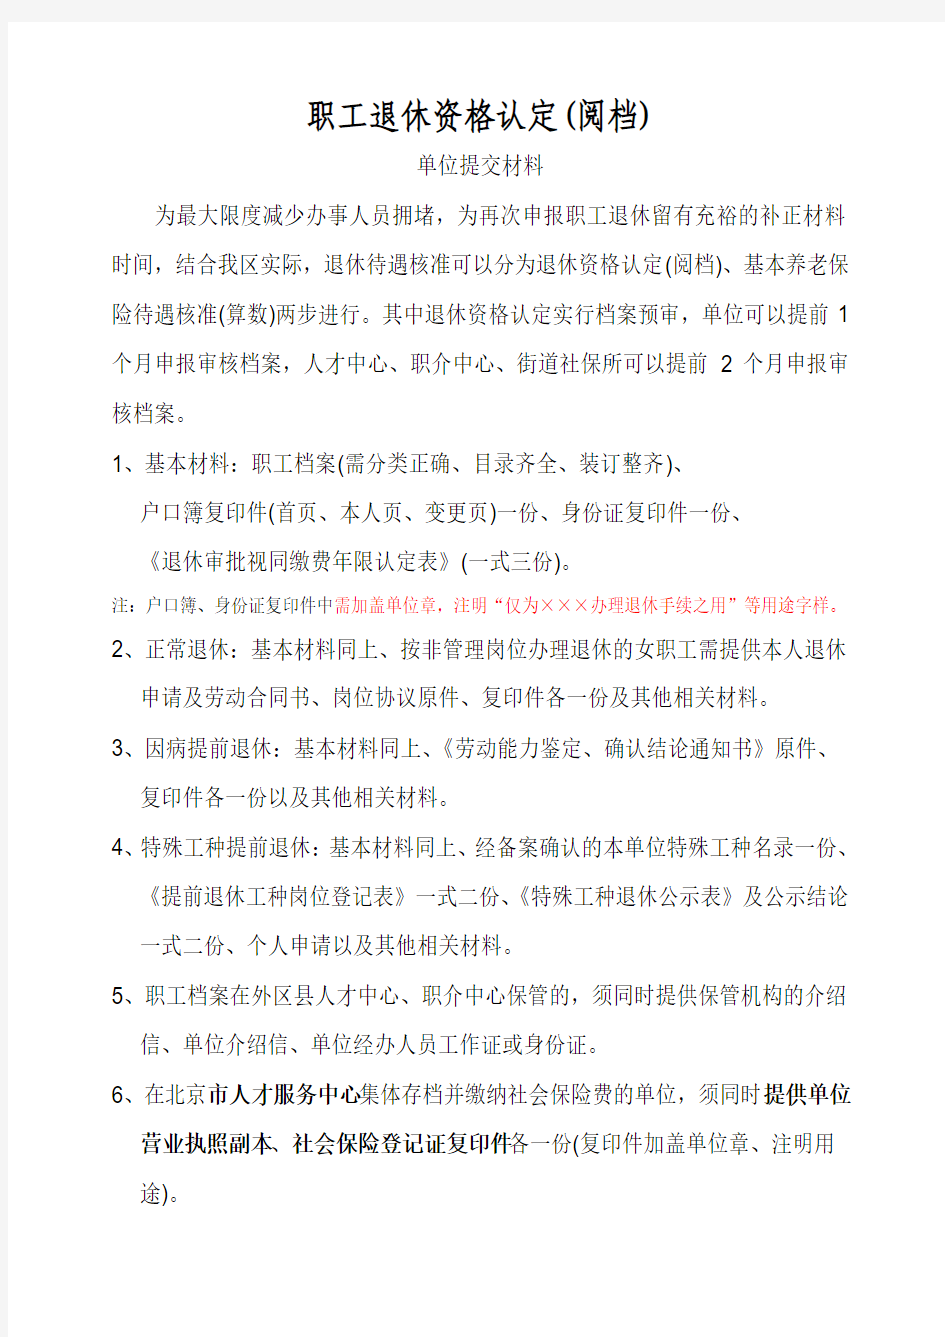 北京西城区退休核准多部门流程